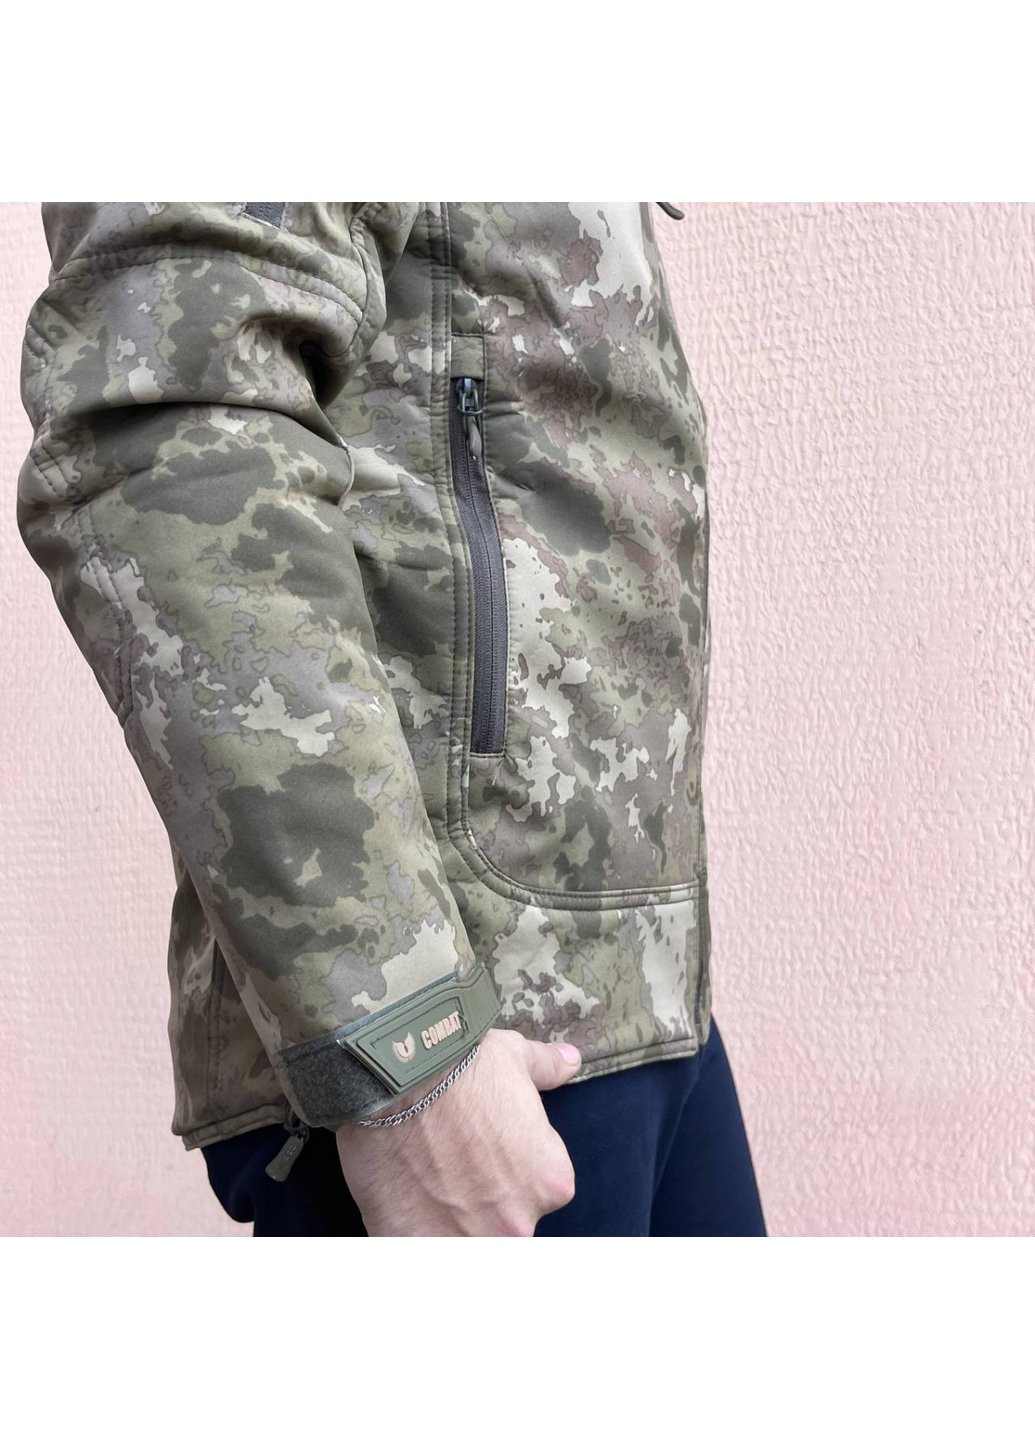 Оливковая (хаки) демисезонная куртка мужская тактическая мультикам турция софтшел soft-shell всу (зсу) s 8067 Combat